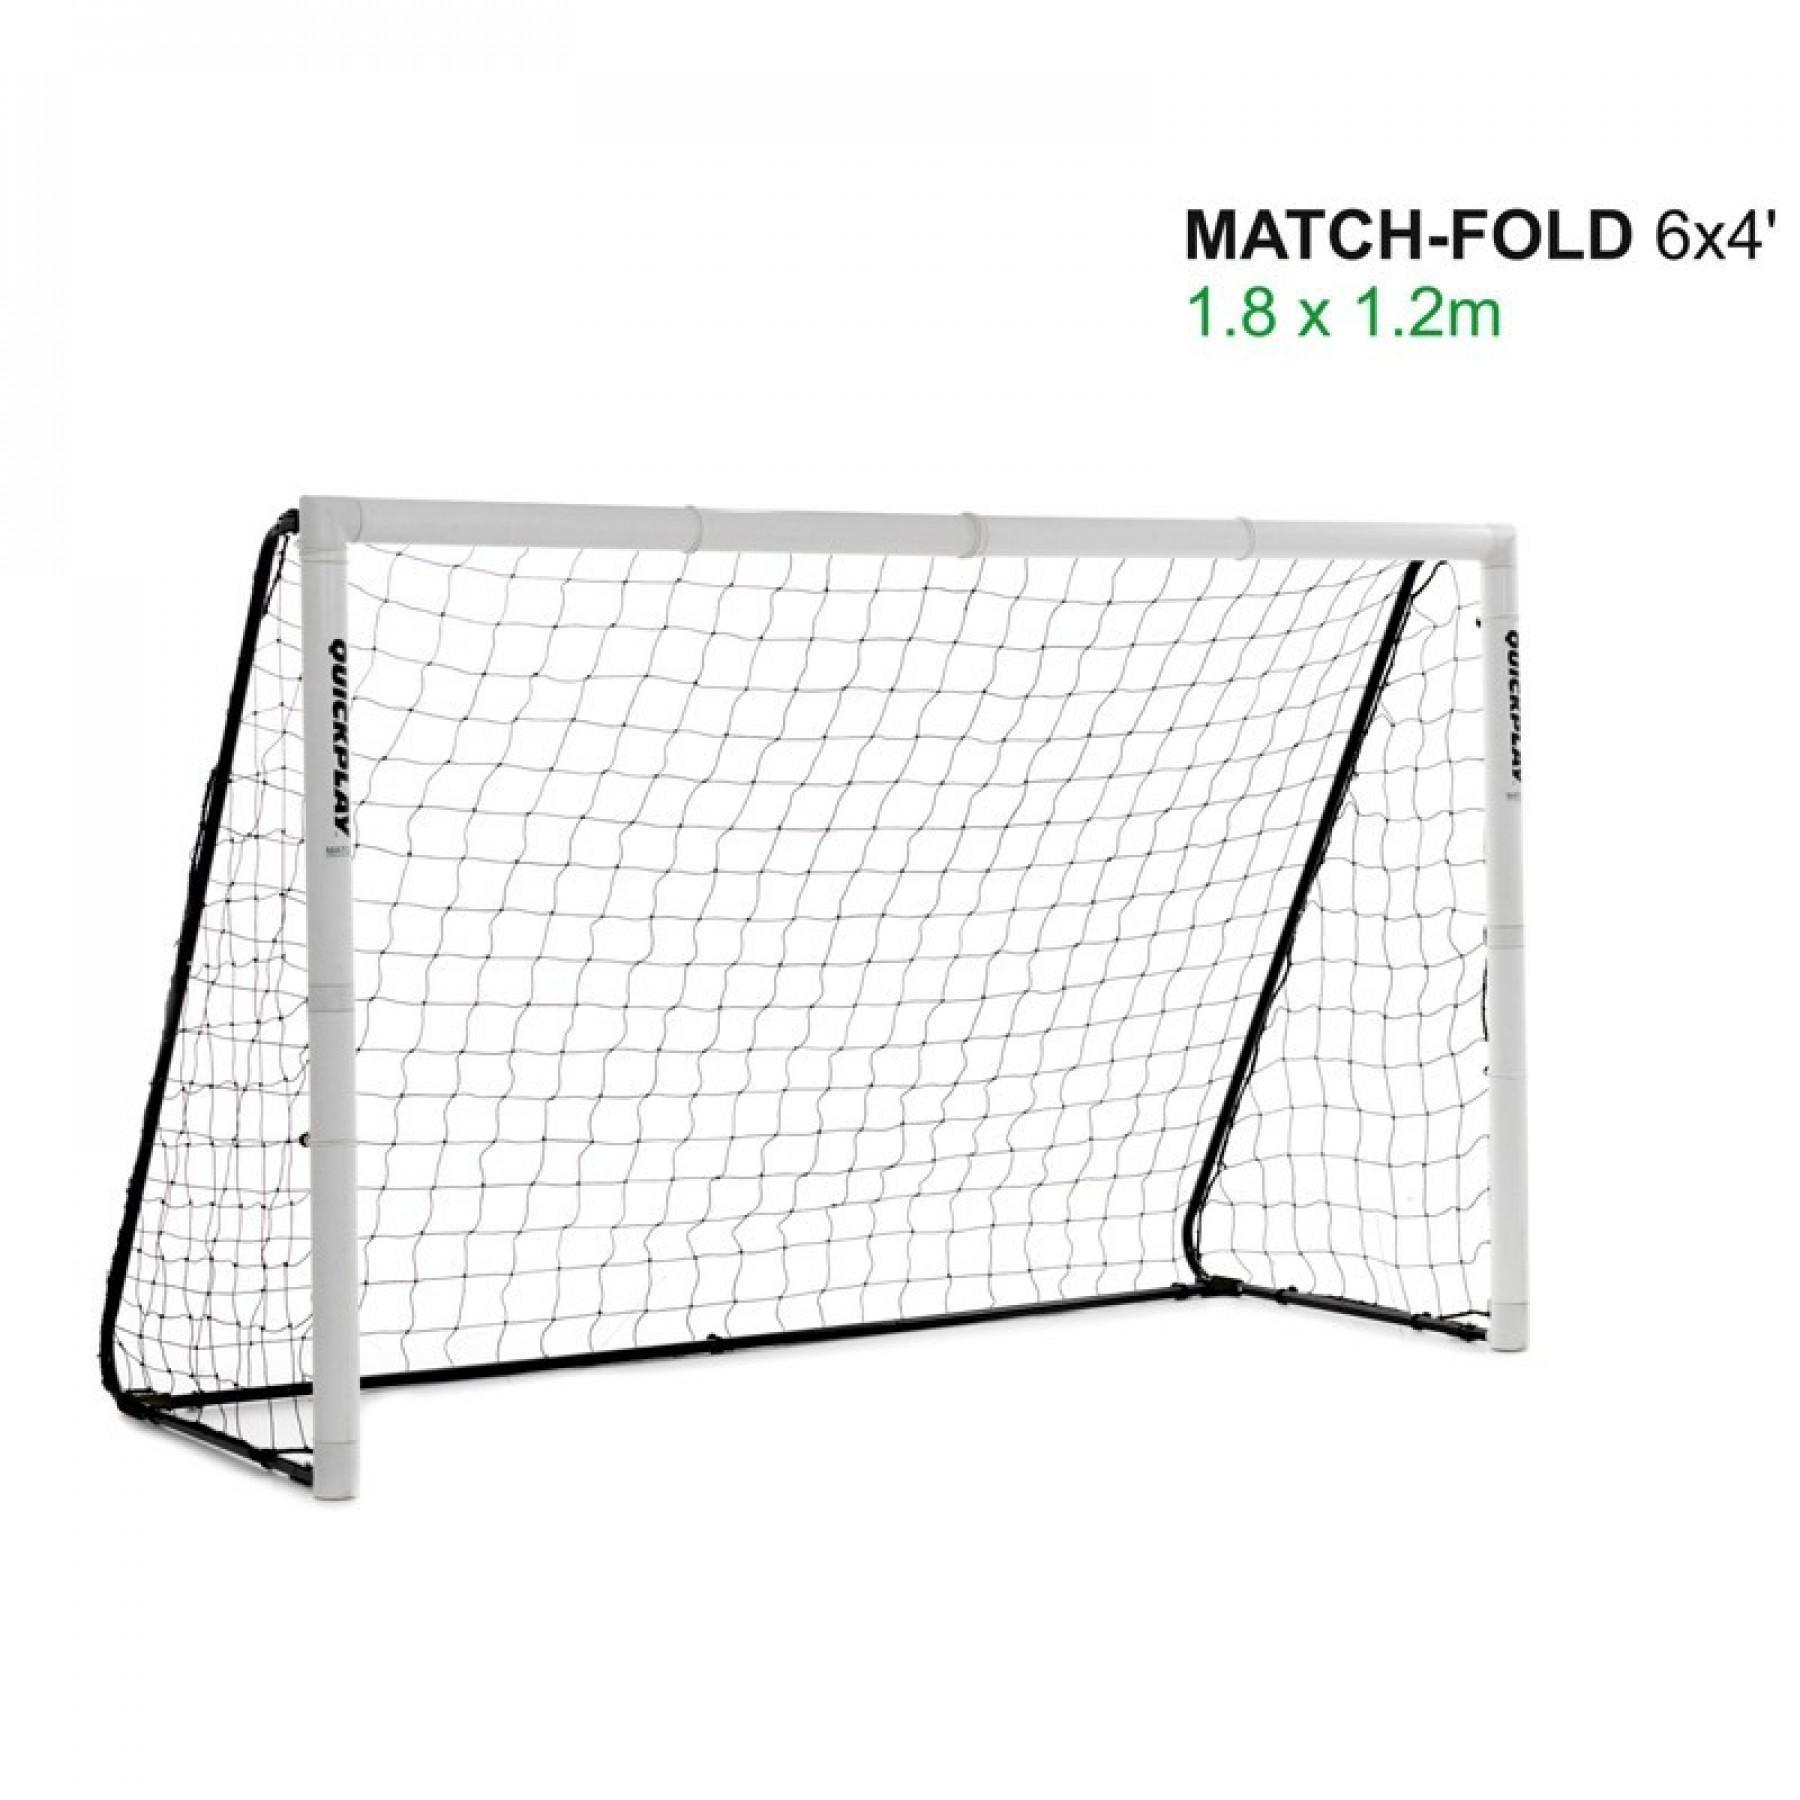 Składana bramka do piłki nożnej Quickplay match fold 1,8m x 1,2m